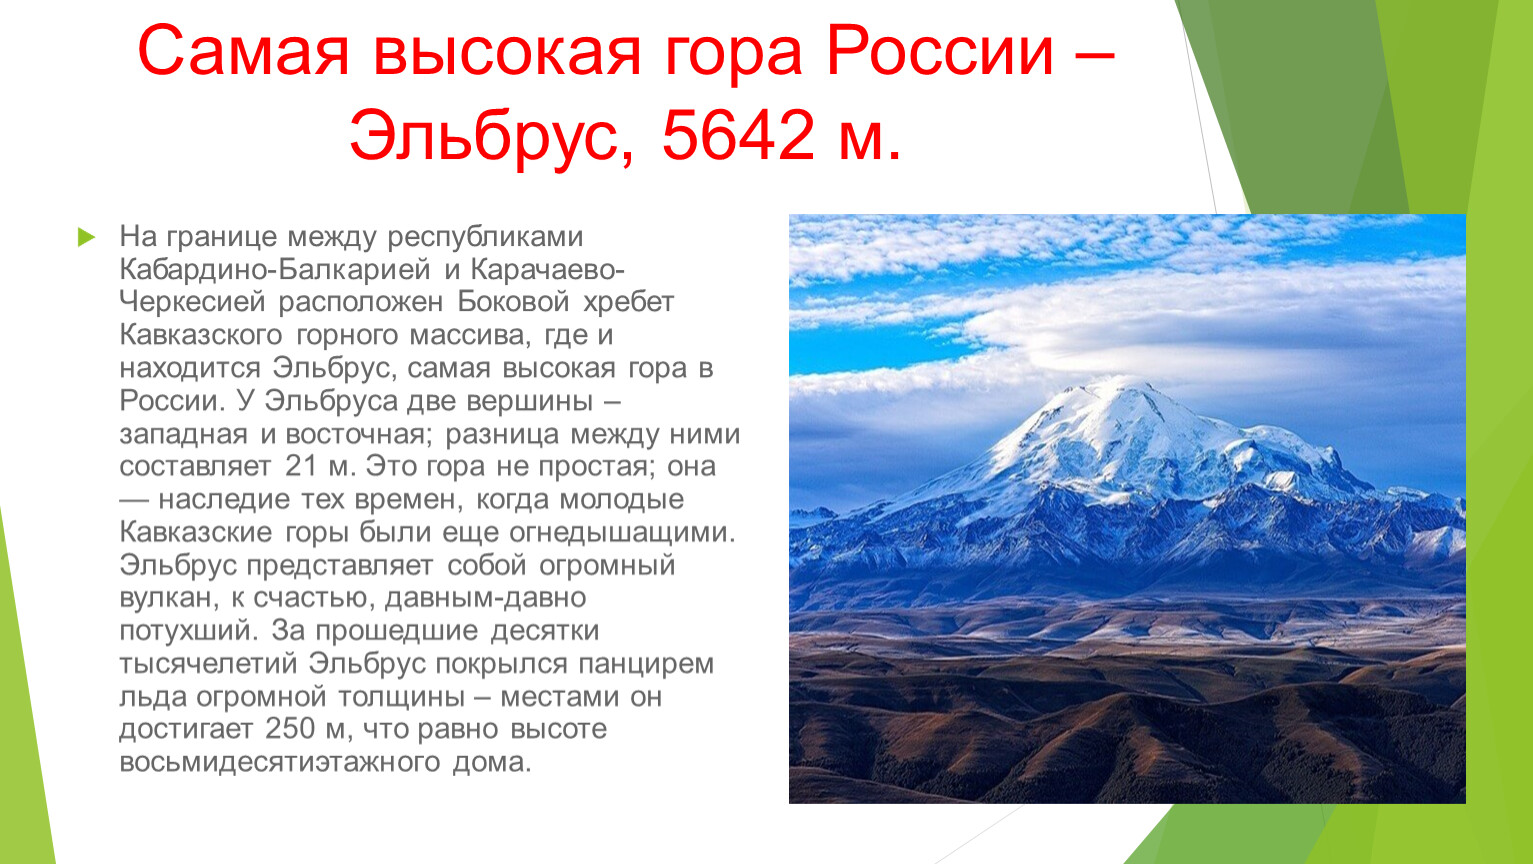 Кавказские горы средняя высота гор